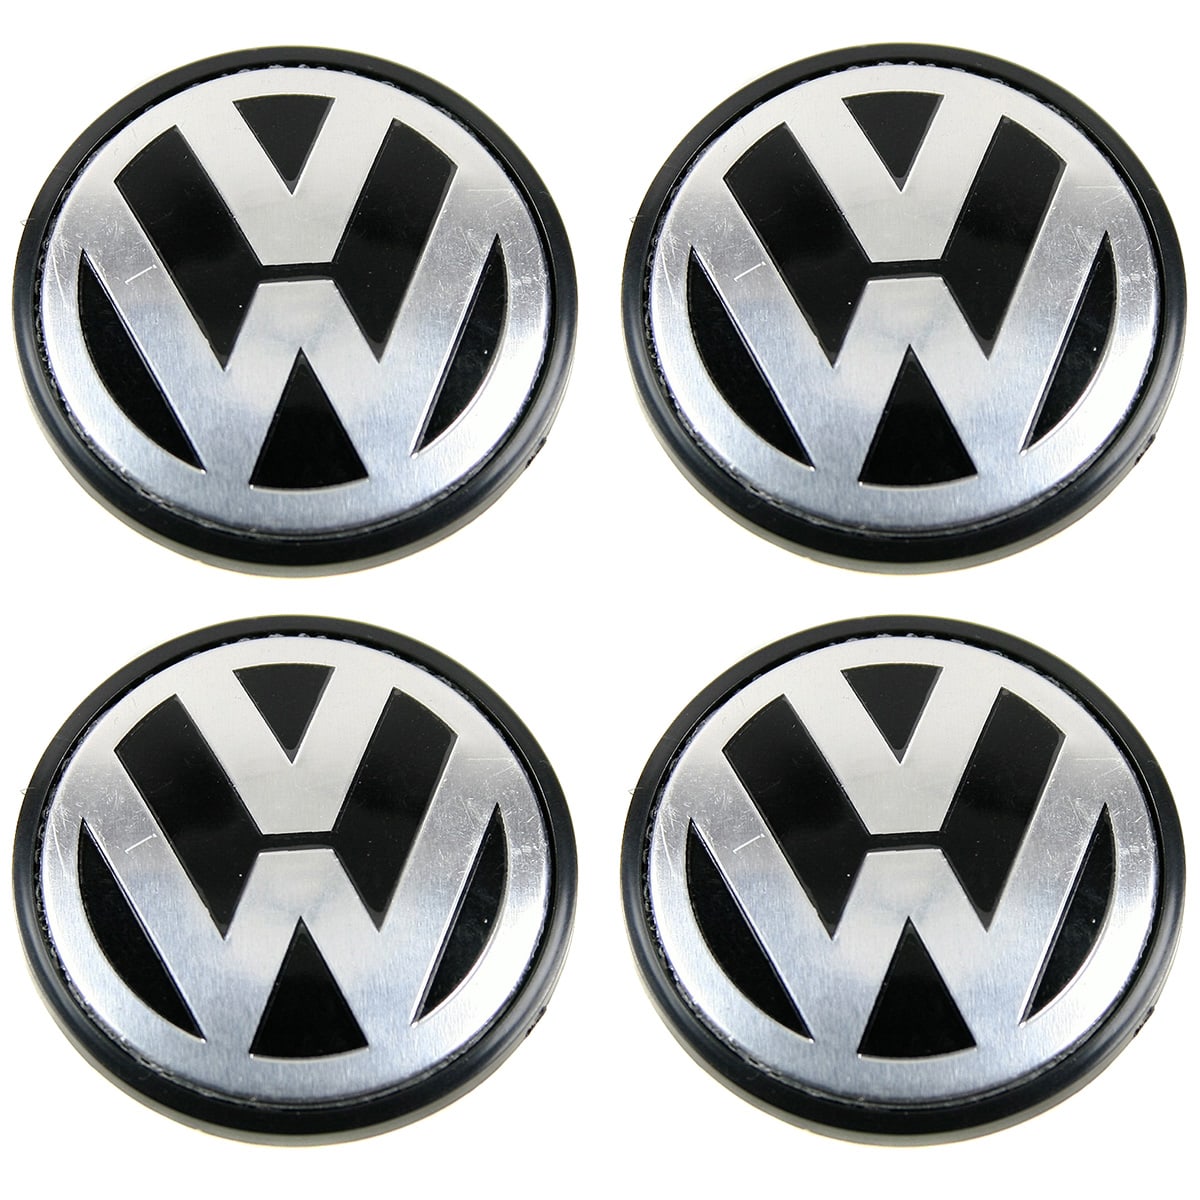 Caches moyeux centre de roues 65mm logo VW chrome fond noir.